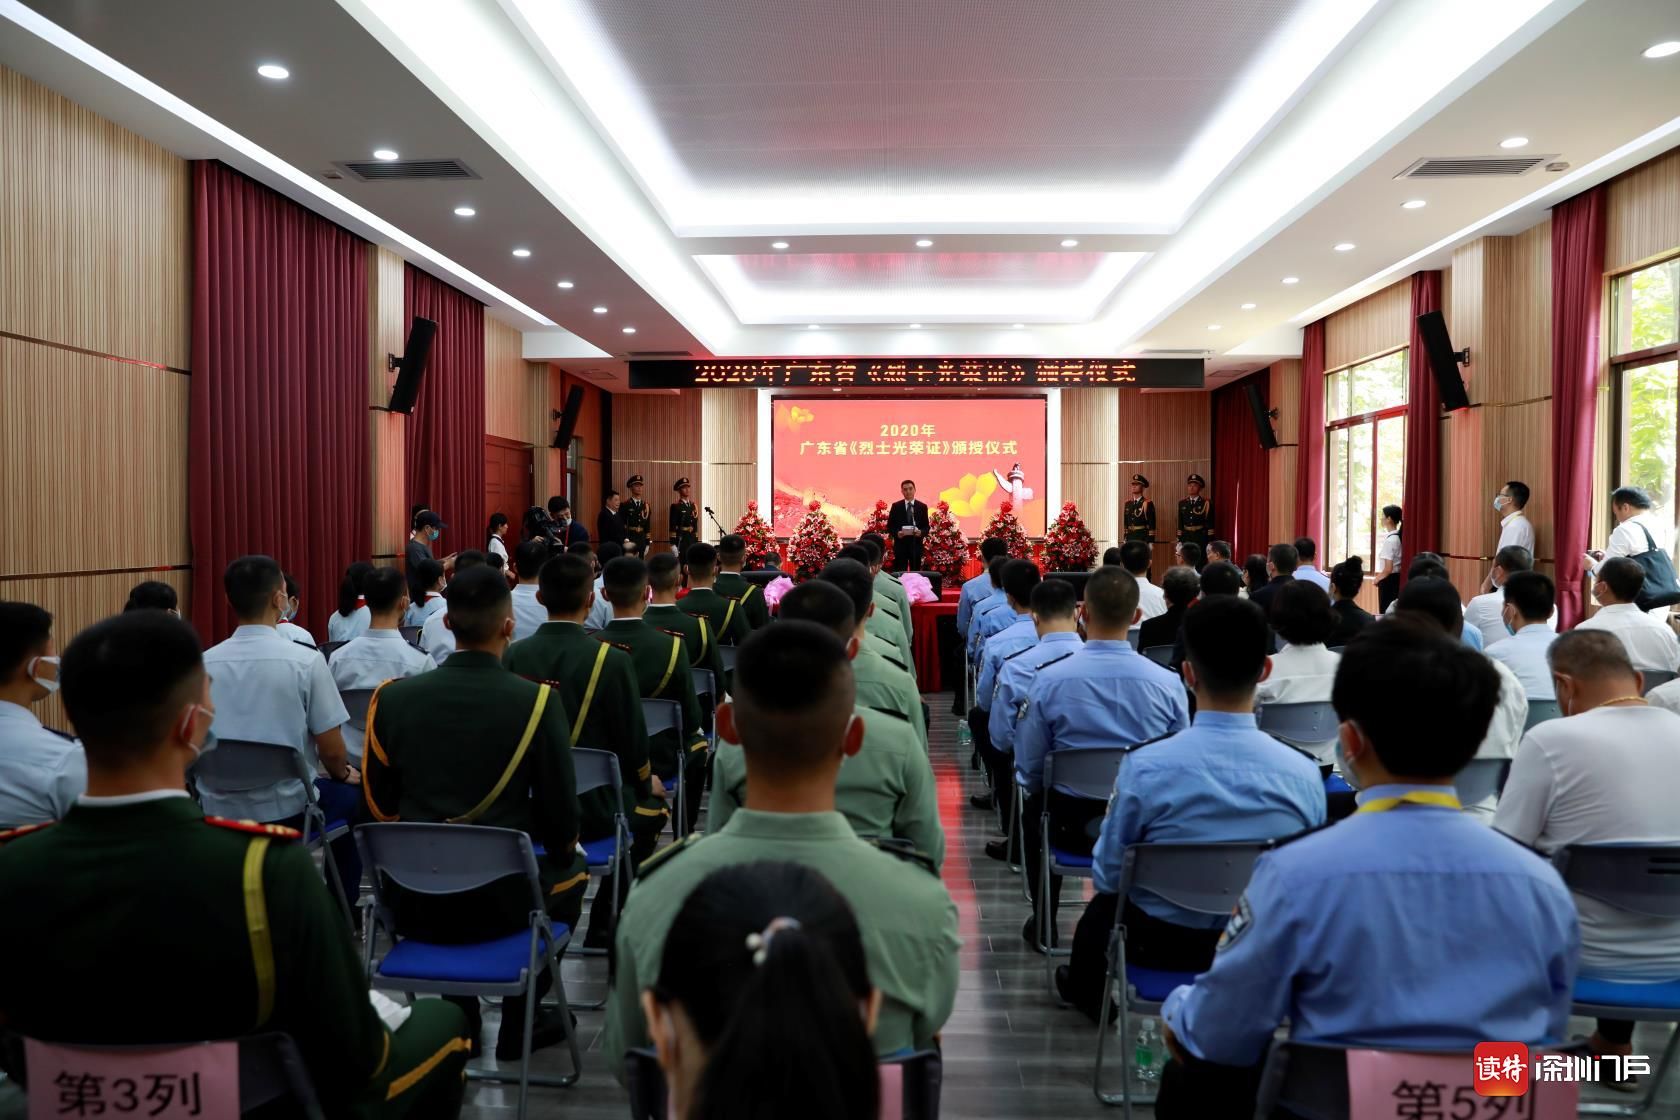 广东省人民政府隆重举行《烈士光荣证》颁授仪式